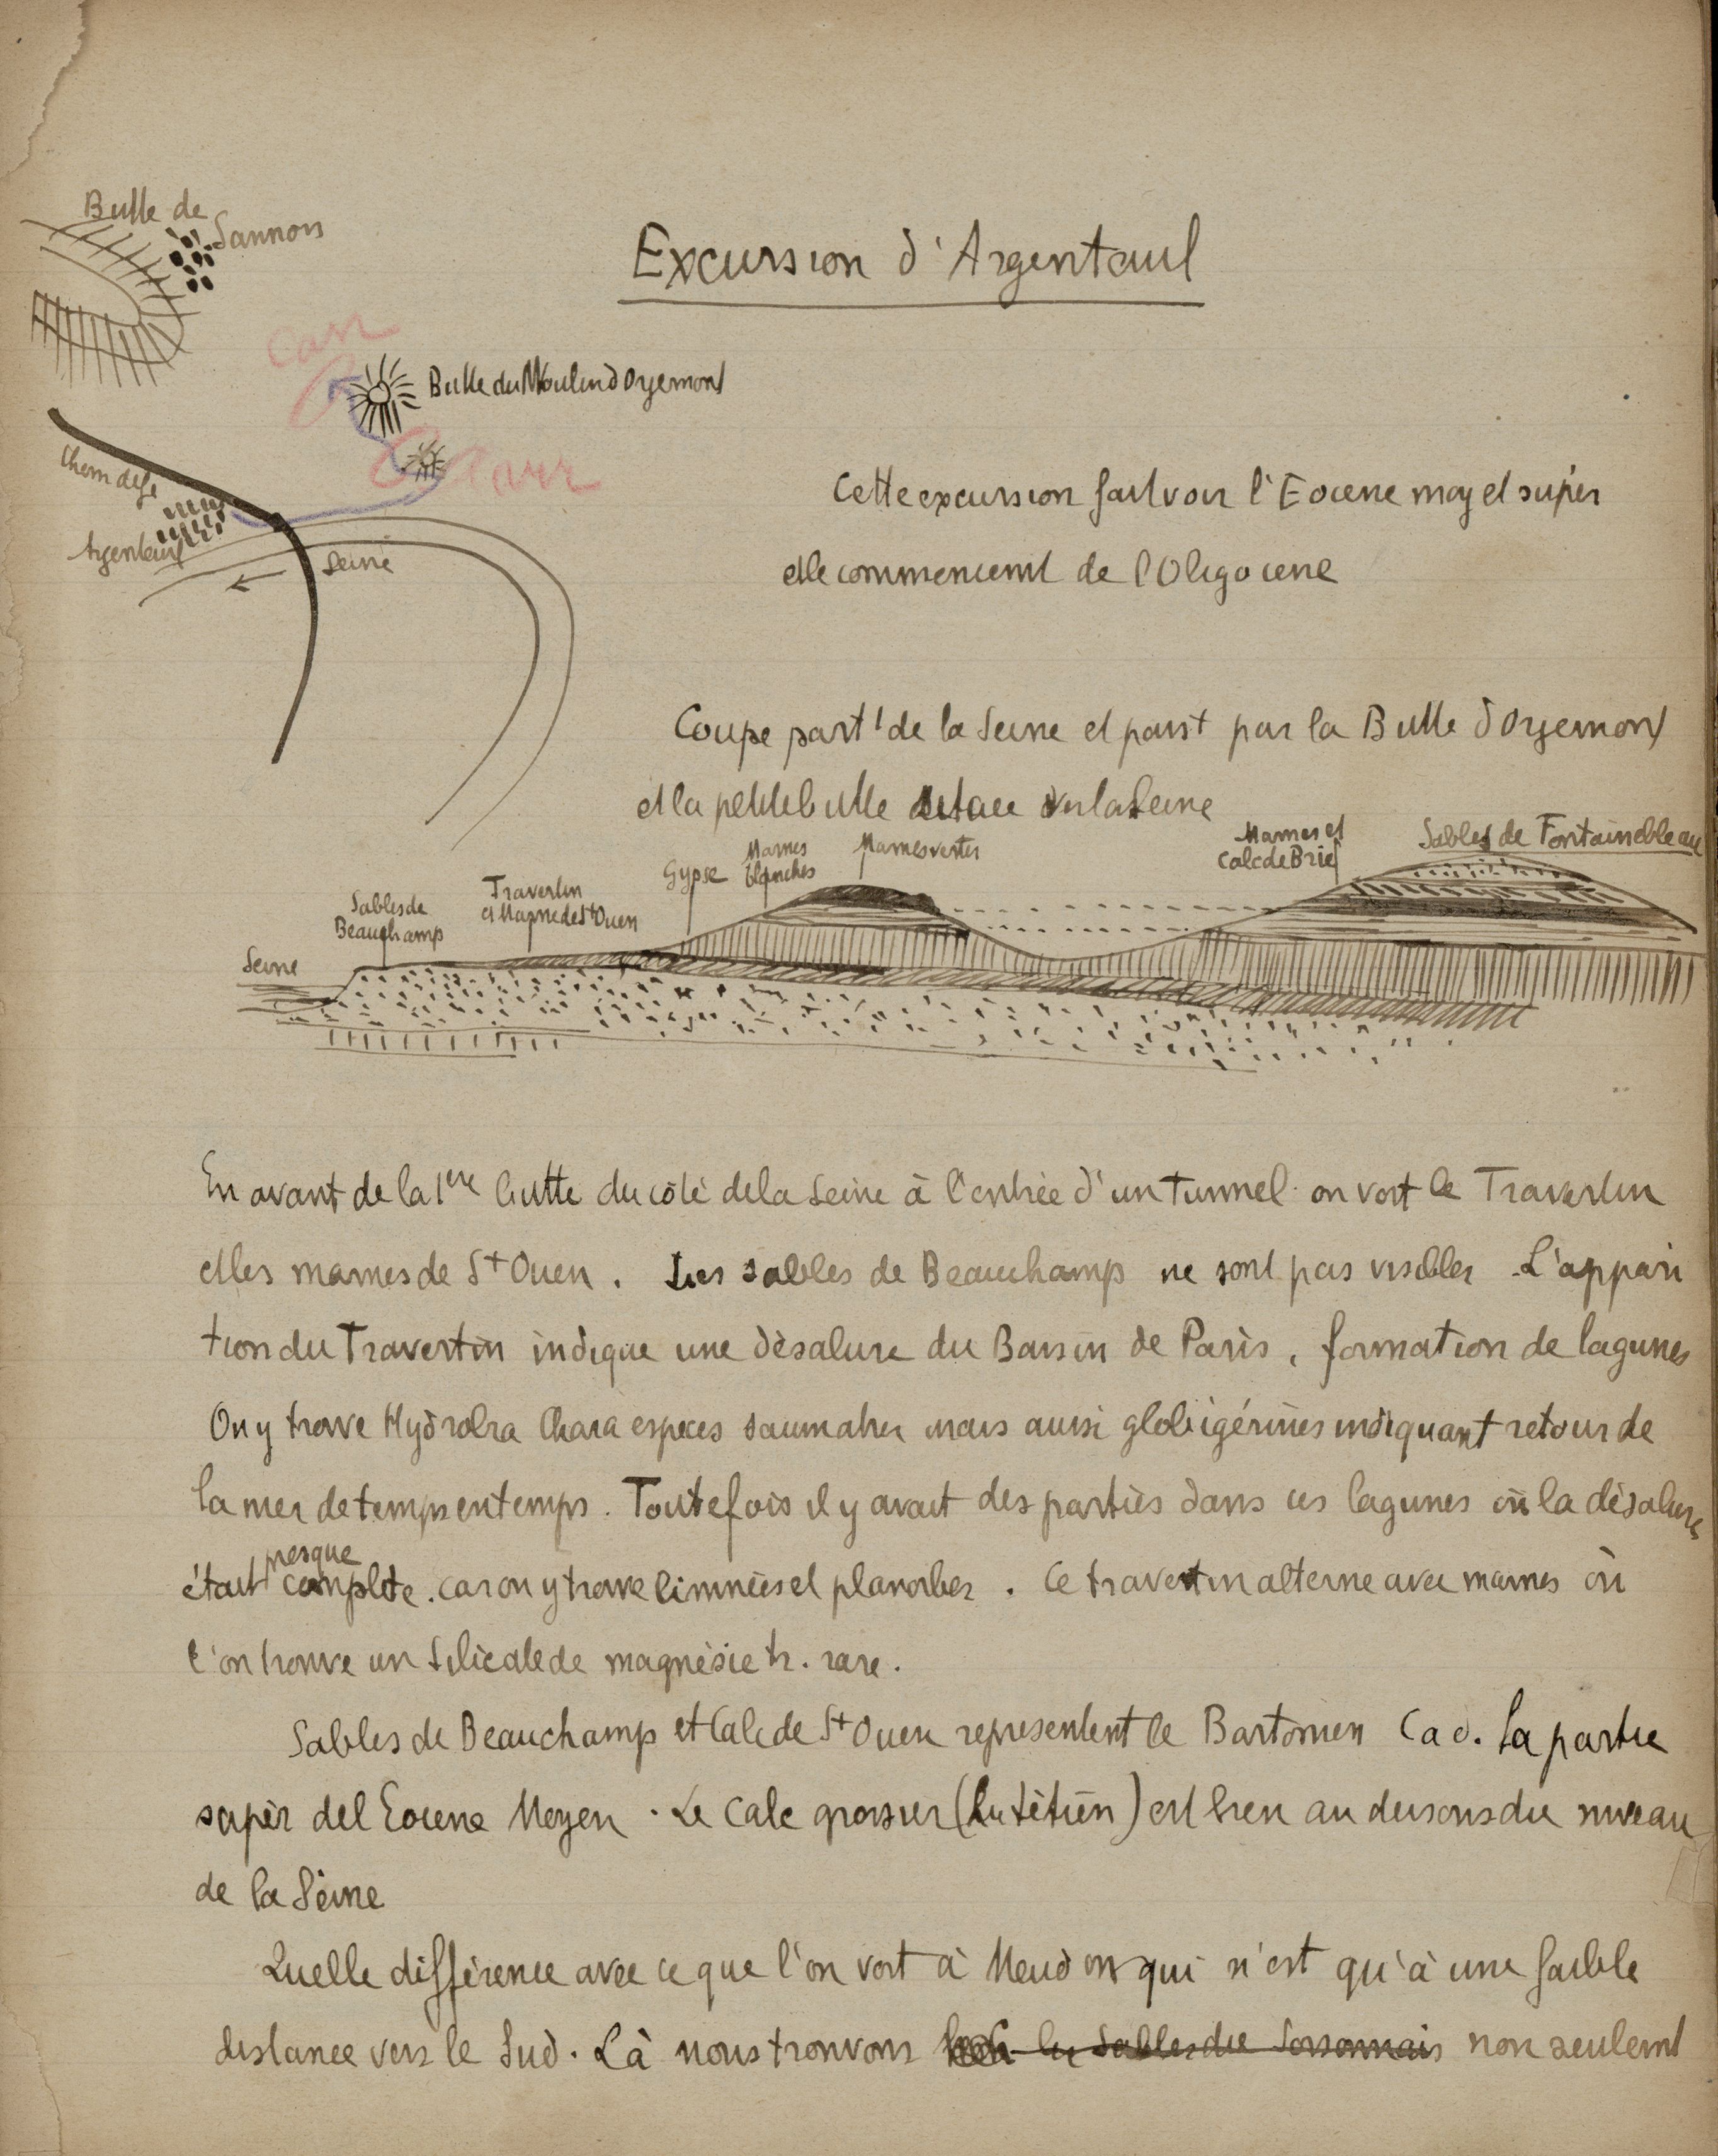 « Excursion d’Argenteuil » : page extraite du cahier d’« Excursions géologiques et botaniques autour de Paris » d’Emmanuel de Martonne, 1896.